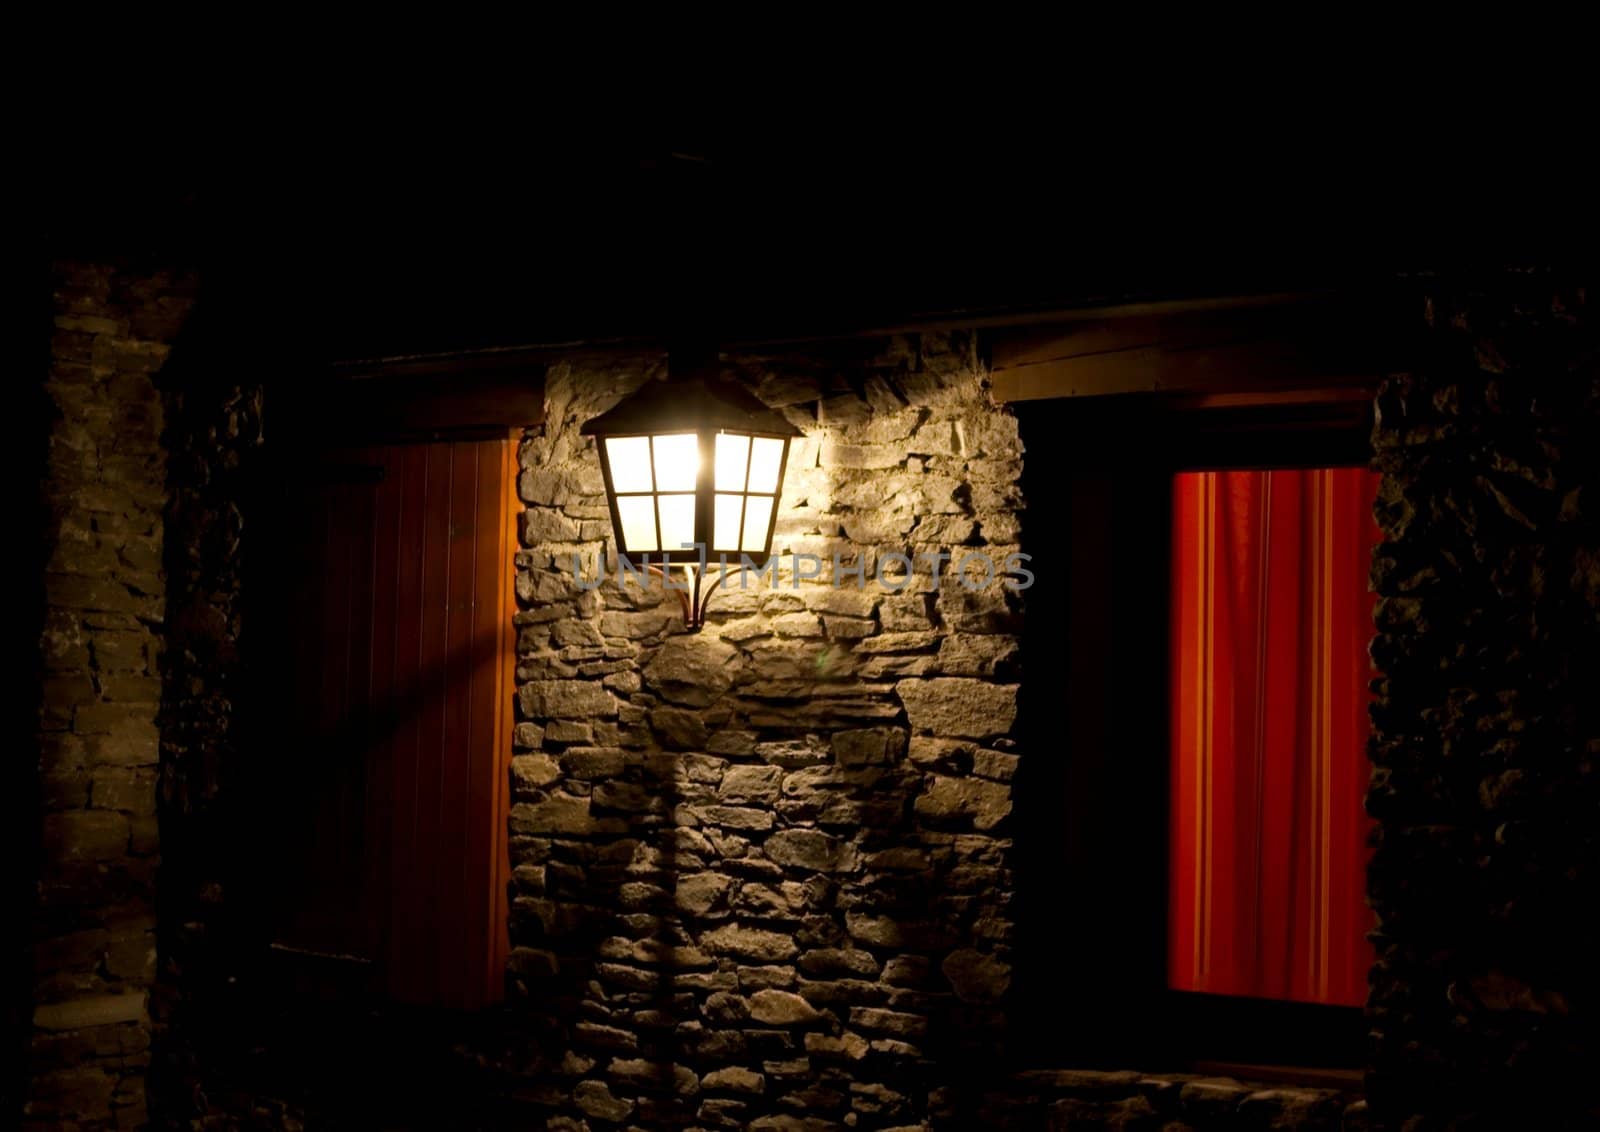 Old fashioned lamp illuminating a wall at night